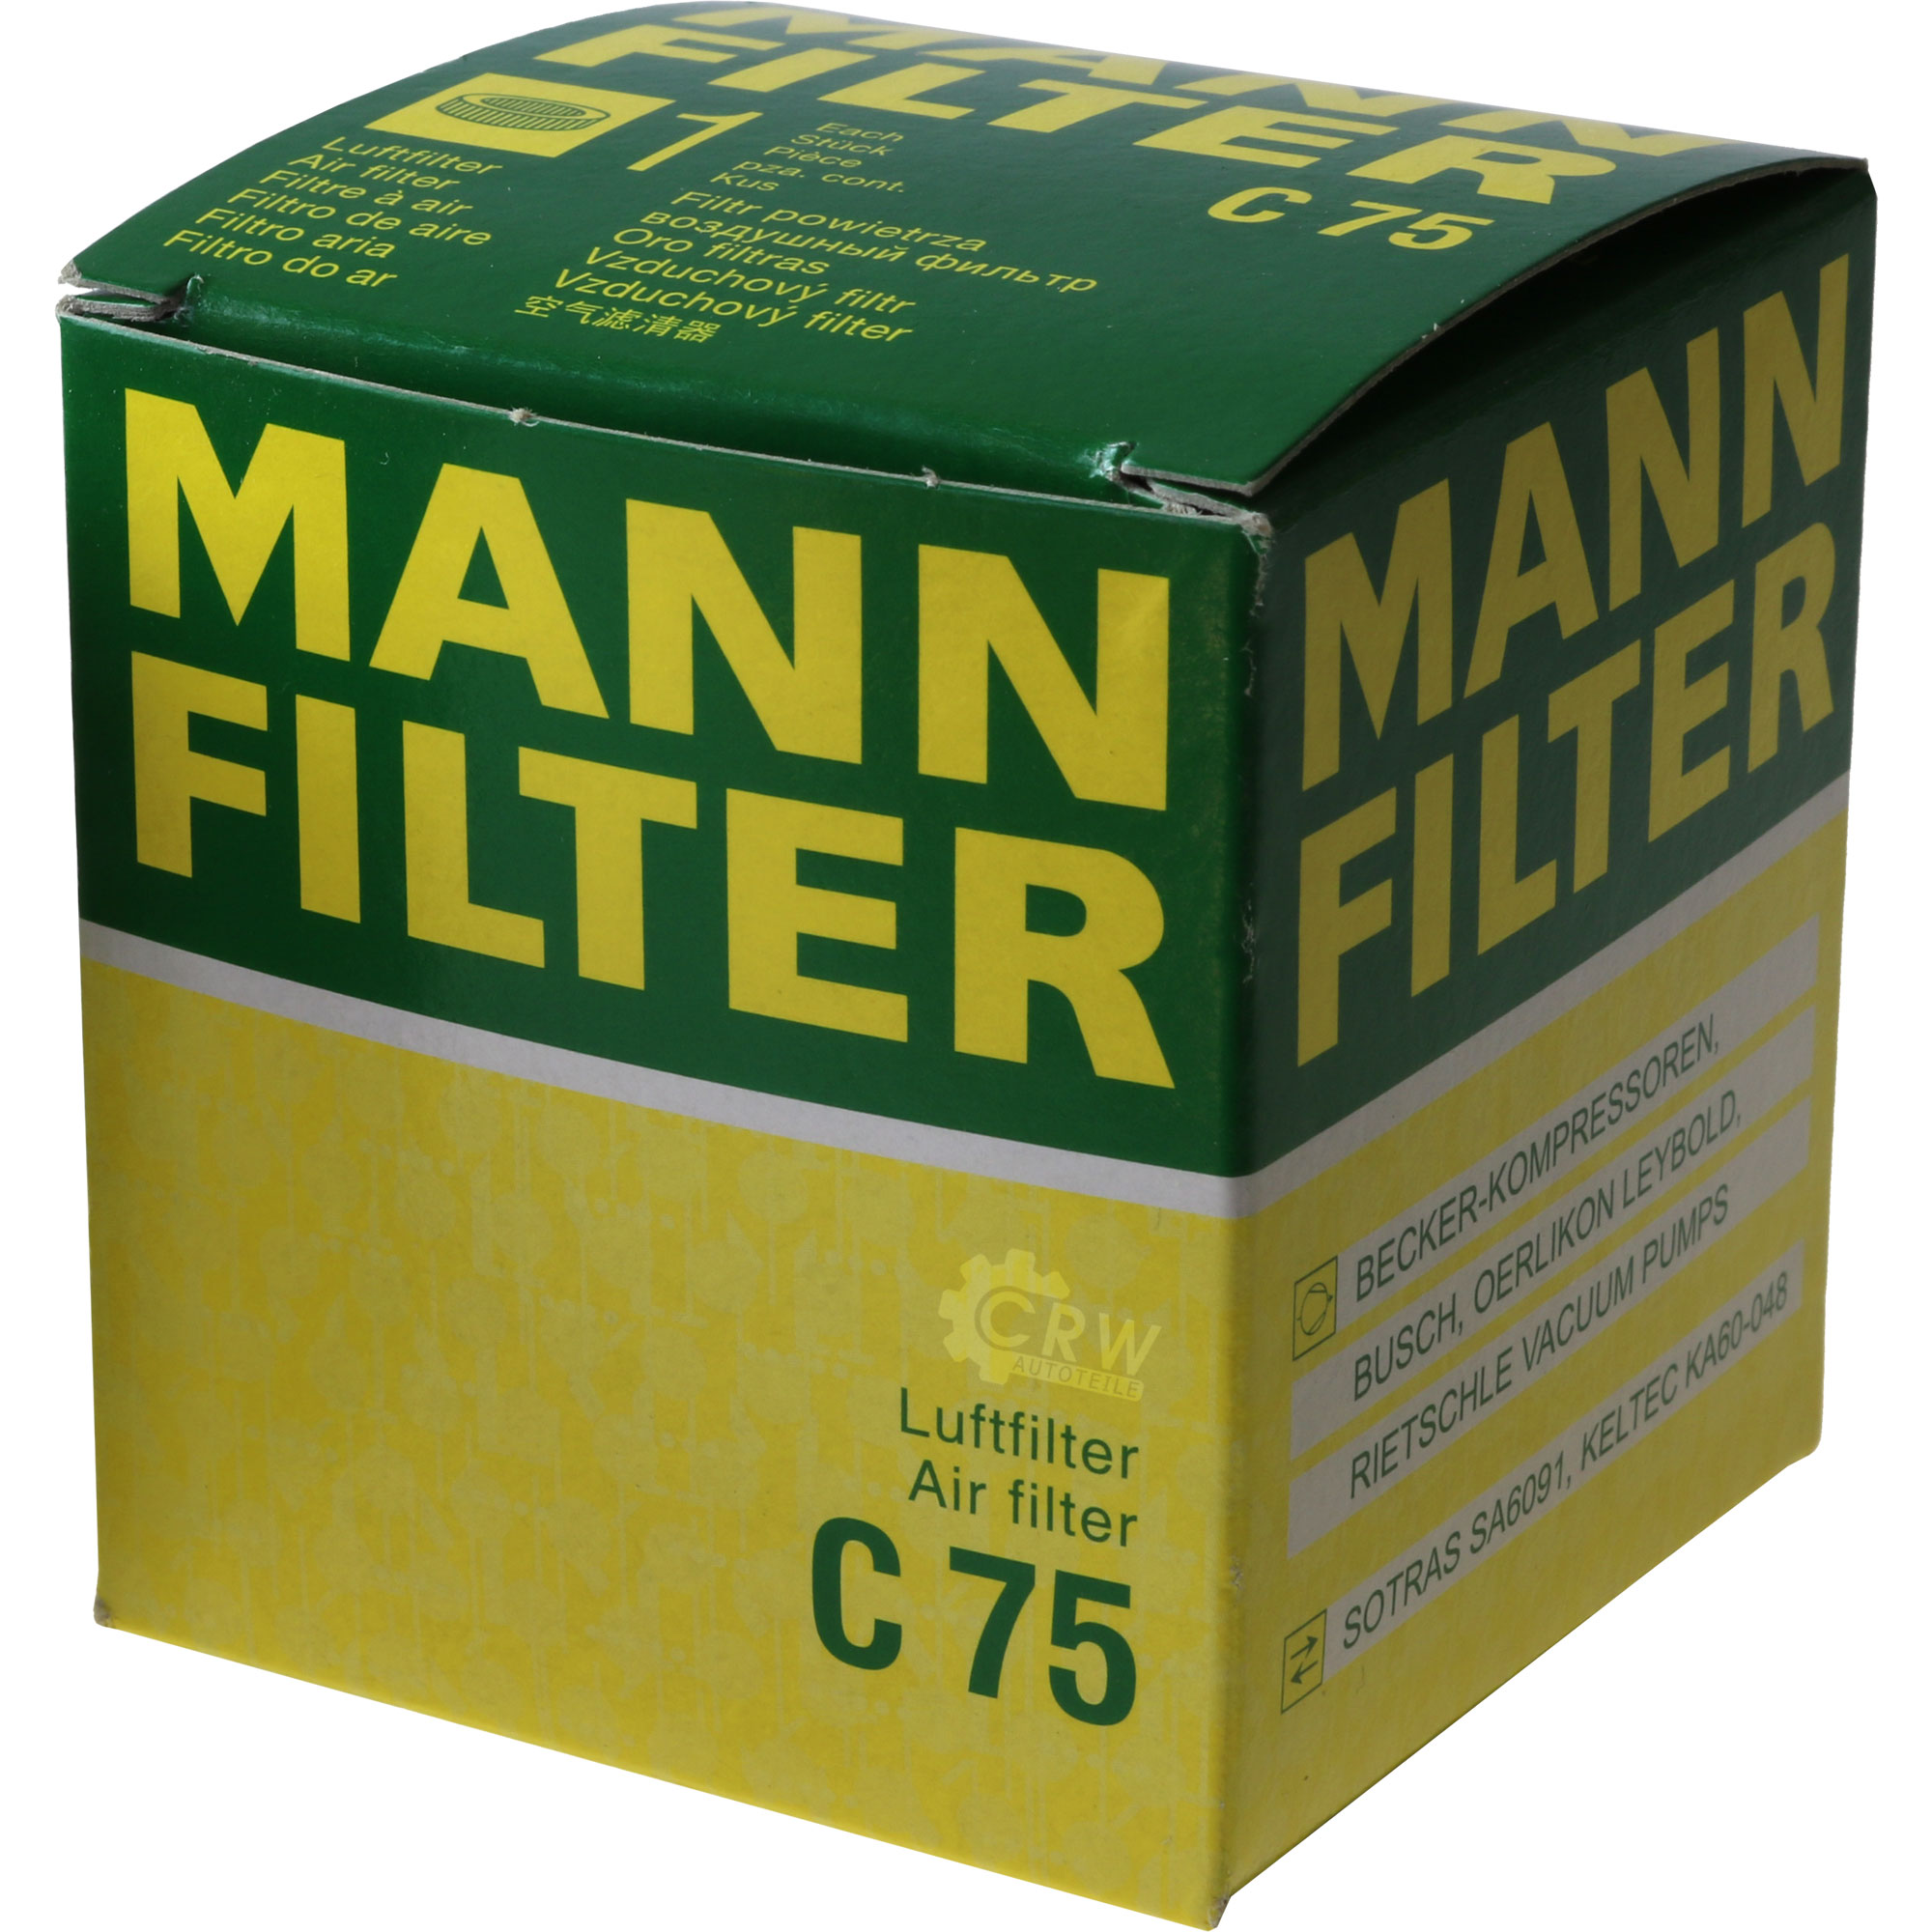 MANN-FILTER Luftfilter C 75